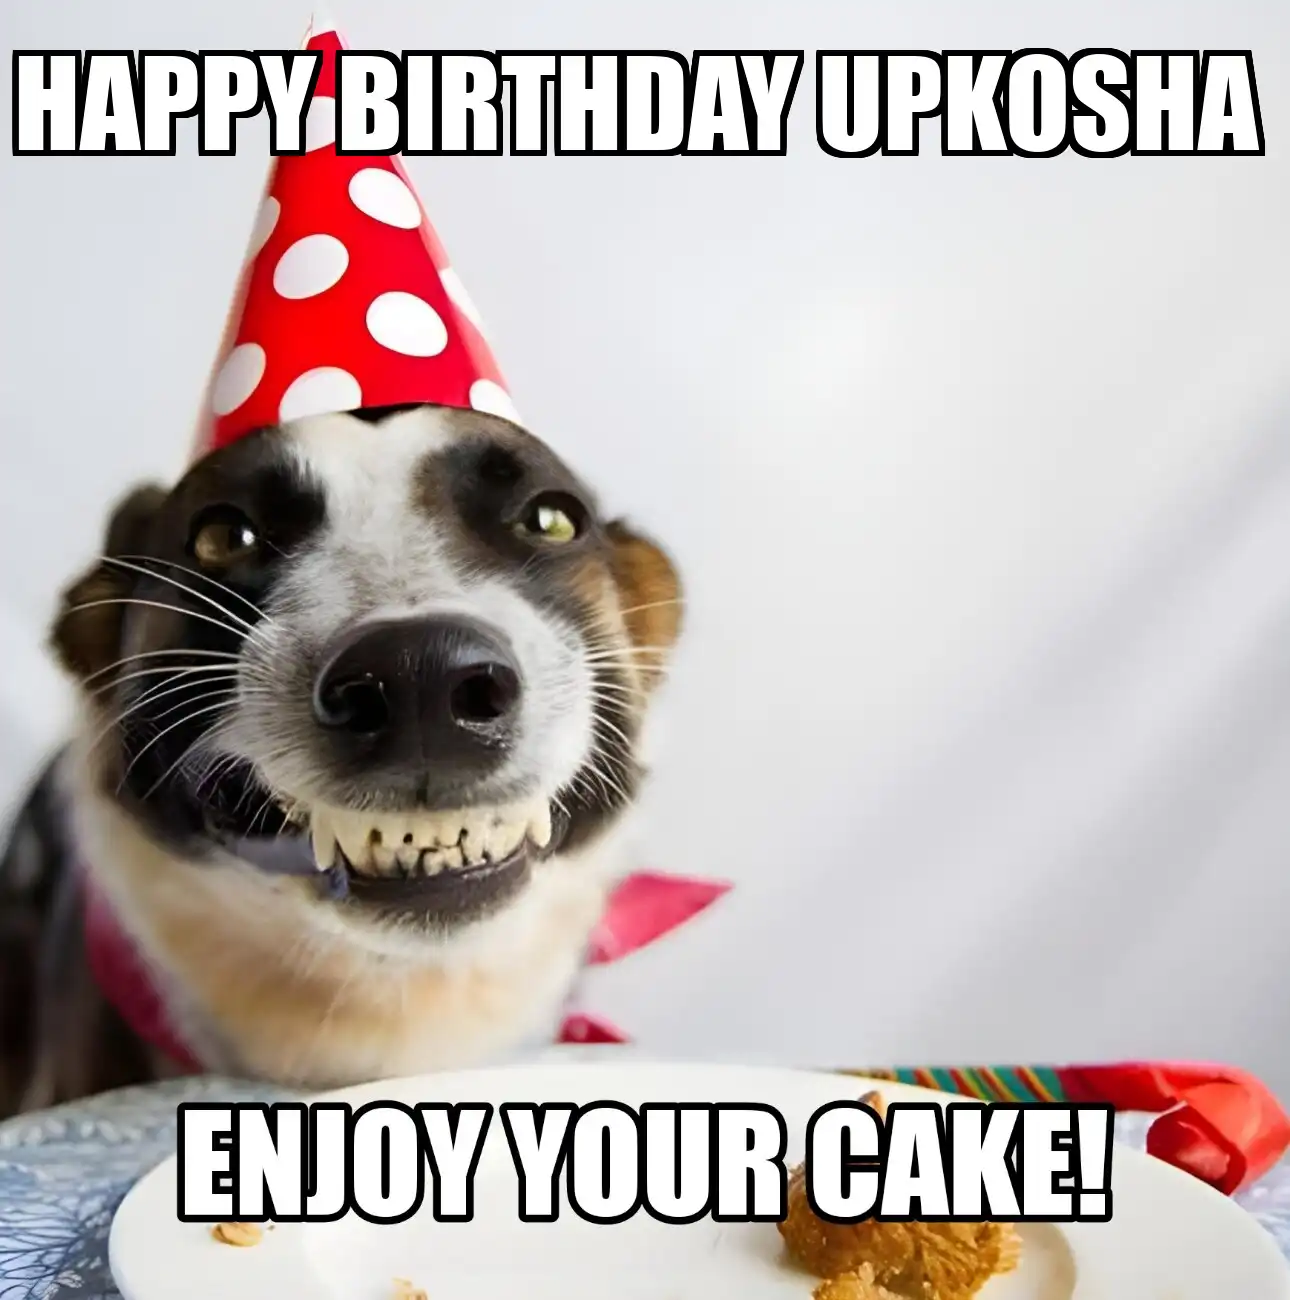 Happy Birthday Upkosha Enjoy Your Cake Dog Meme